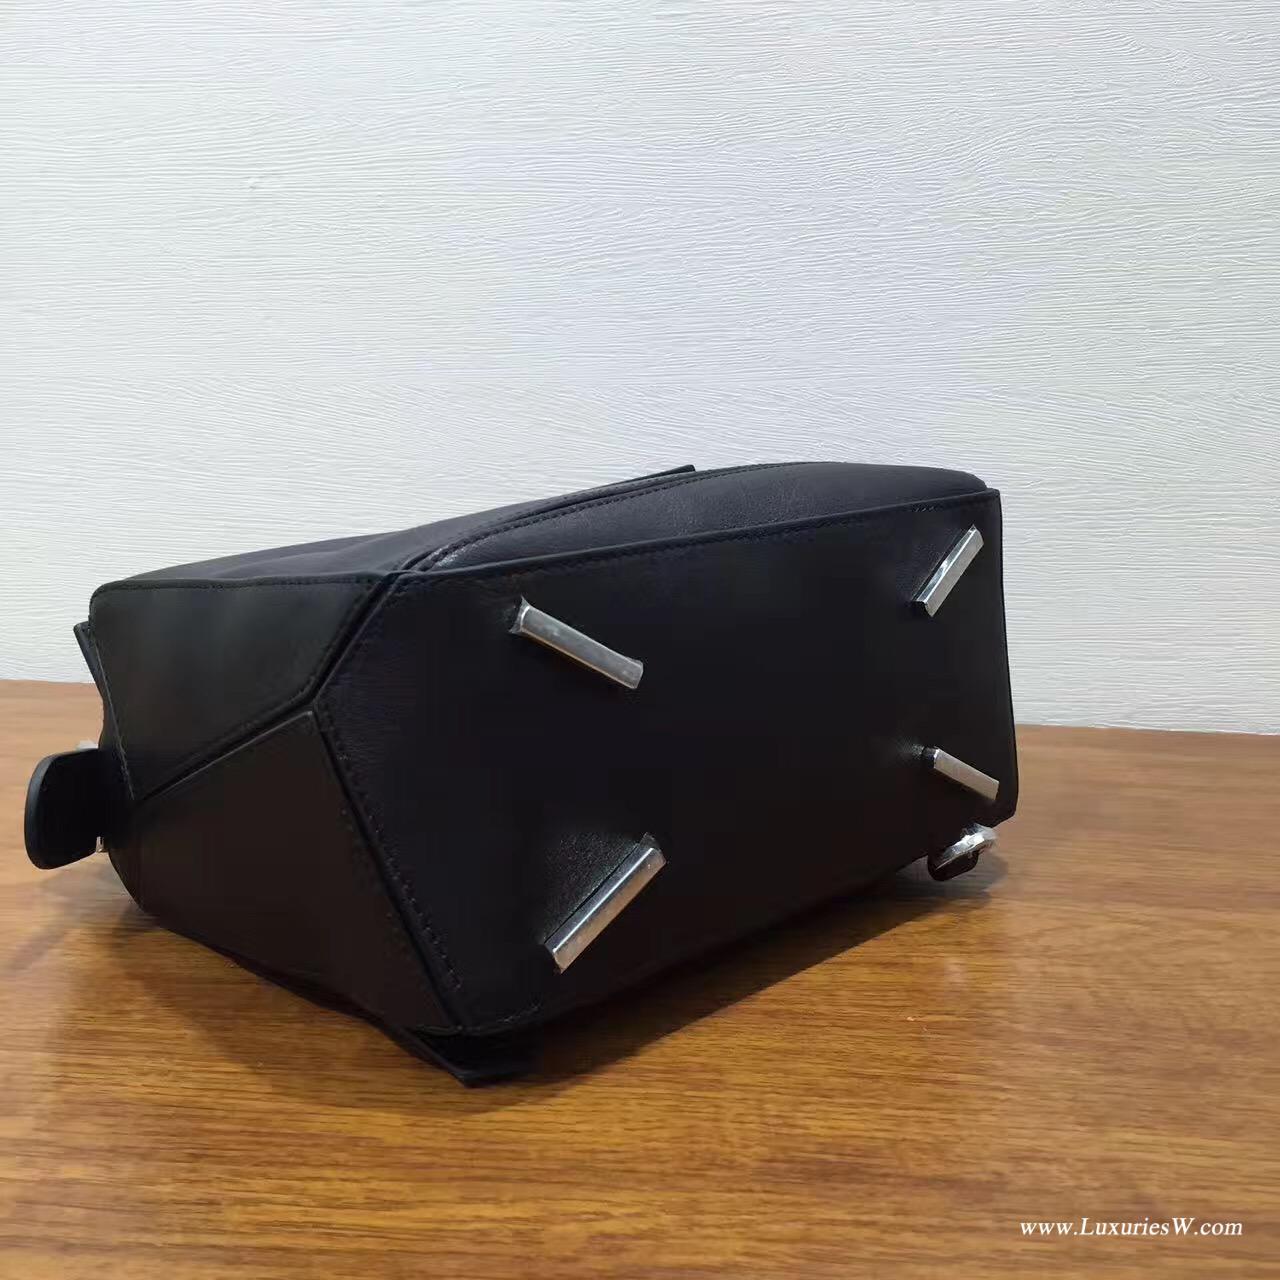 羅意威女包官網 LOEWE Mini Puzzle Bag 黑色 長方體形狀 折疊幾何包